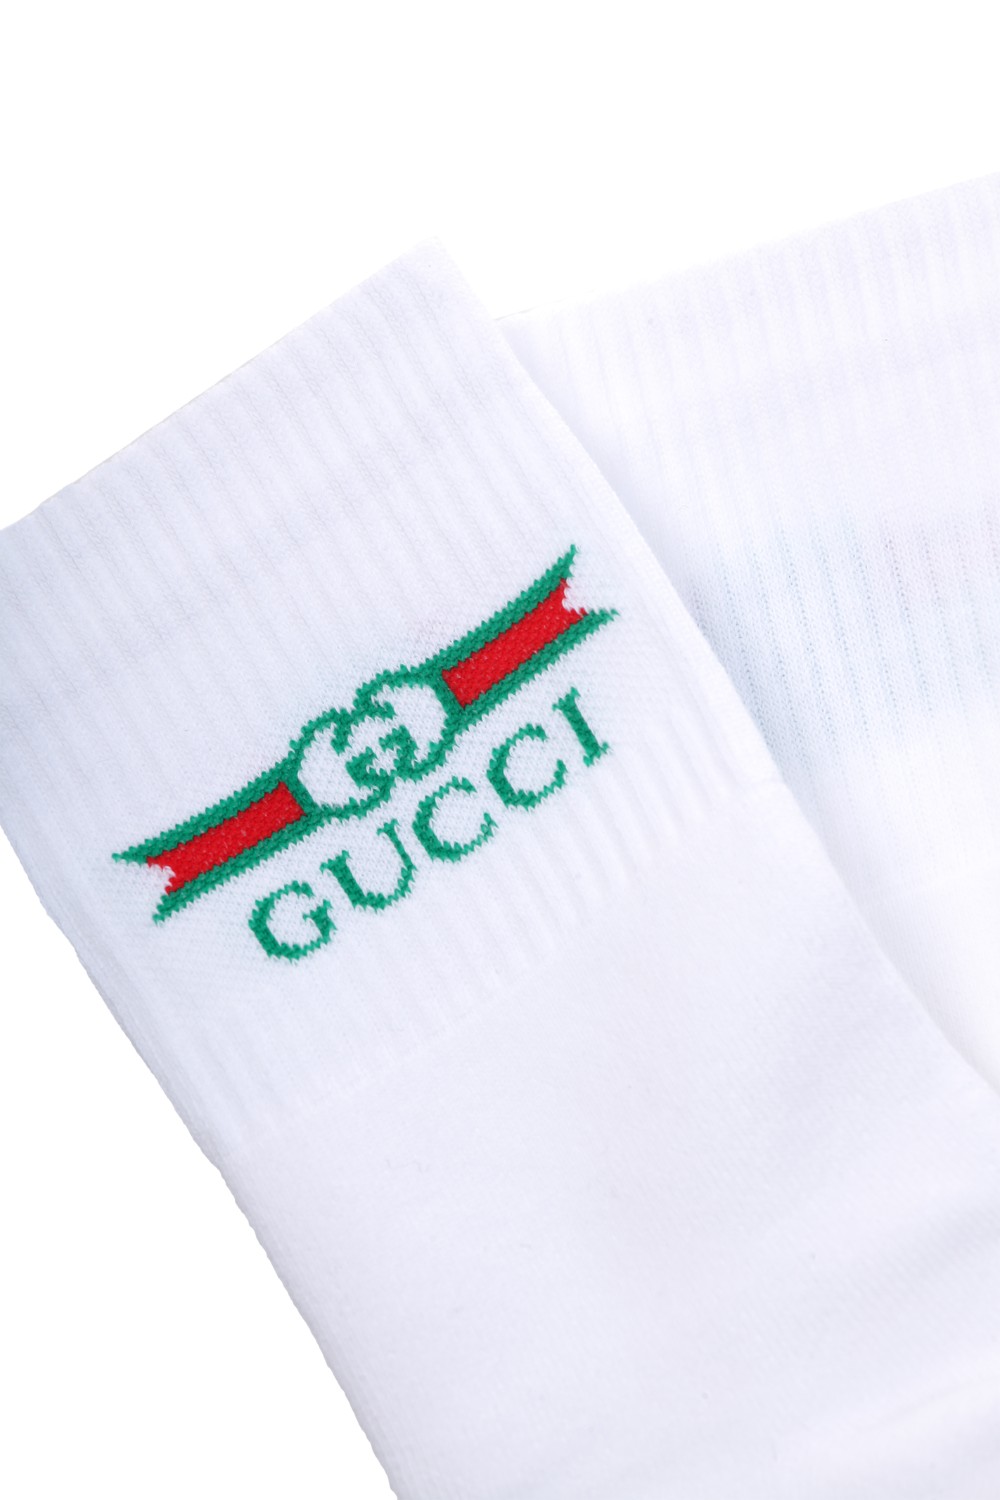 shop GUCCI Saldi calzini: Gucci calzini con Web e Logo.
Dettaglio etichetta Gucci jacquard.
Composizione: 80% cotone 17% poliammide 3% elastan.
Made in Italy.. 604038 4GA25-9200 number 5317441